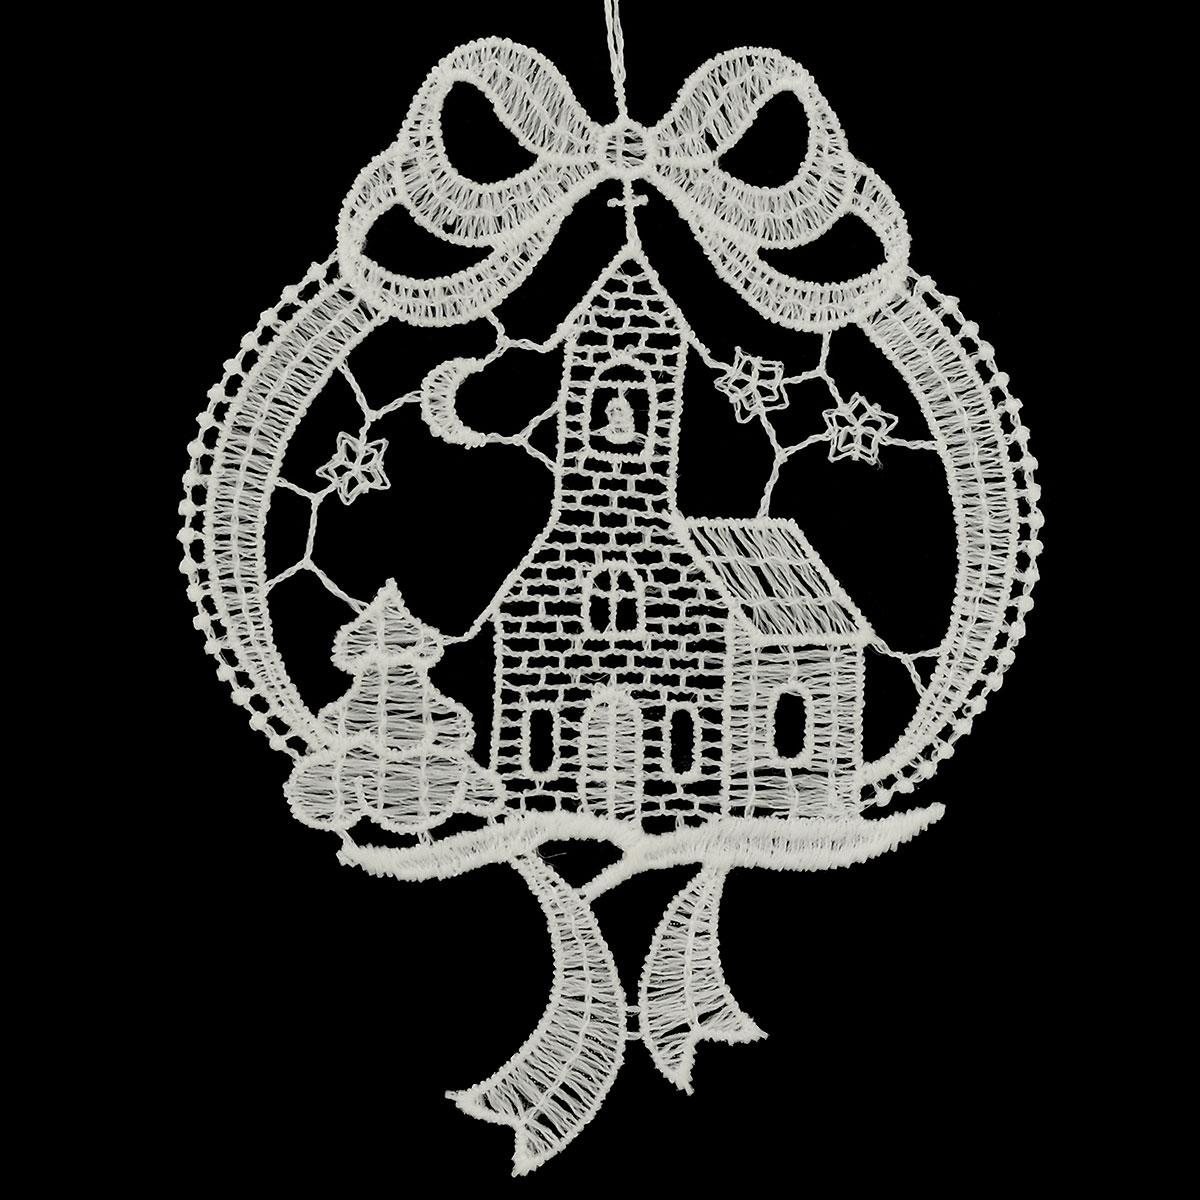 Loopwreath w/ Church Lace Ornament